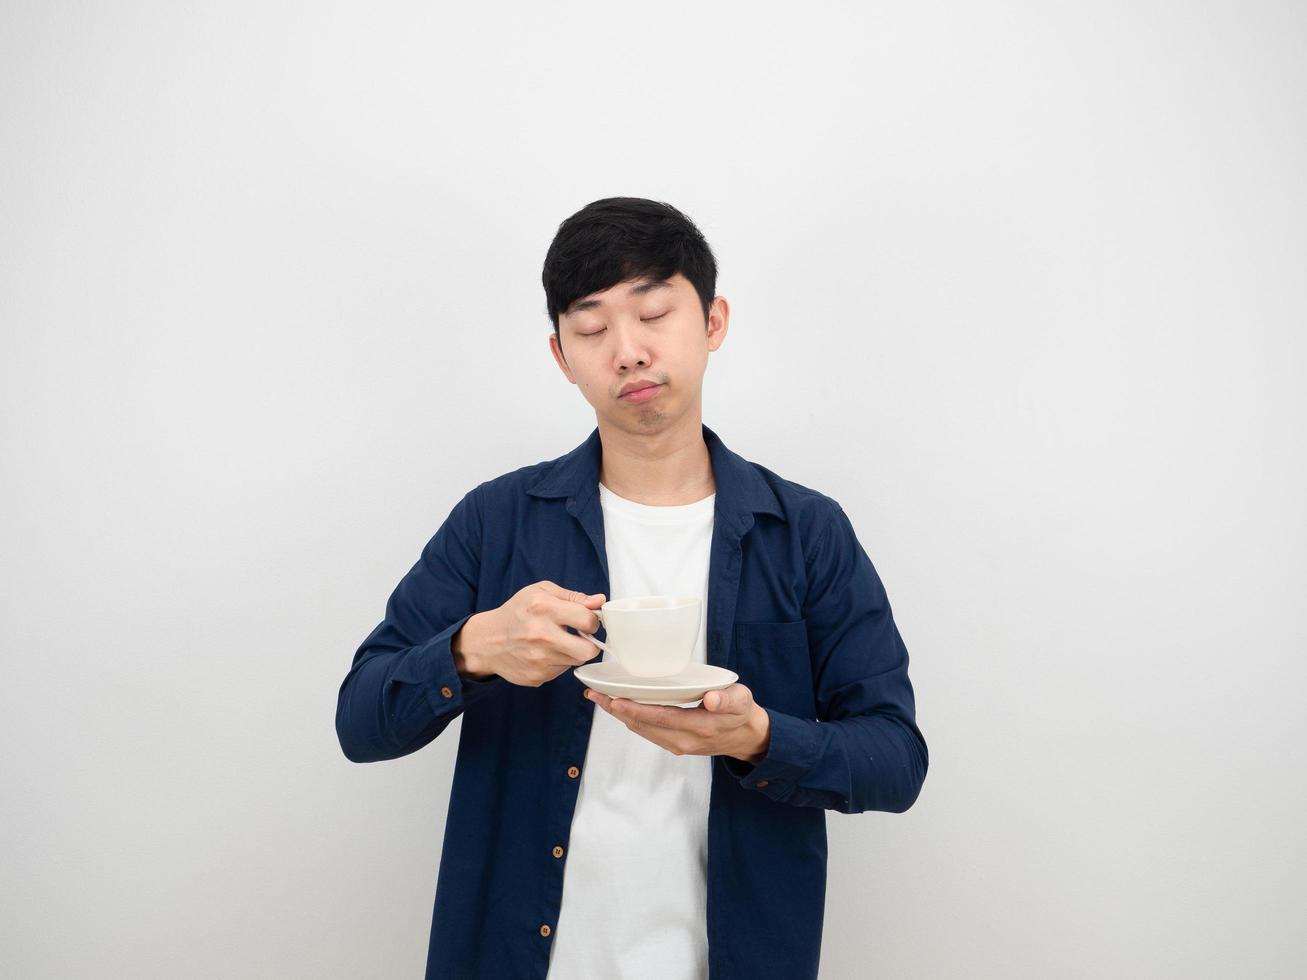 homem asiático segurando a xícara de café com sono fechando os olhos no conceito preguiçoso de fundo branco foto